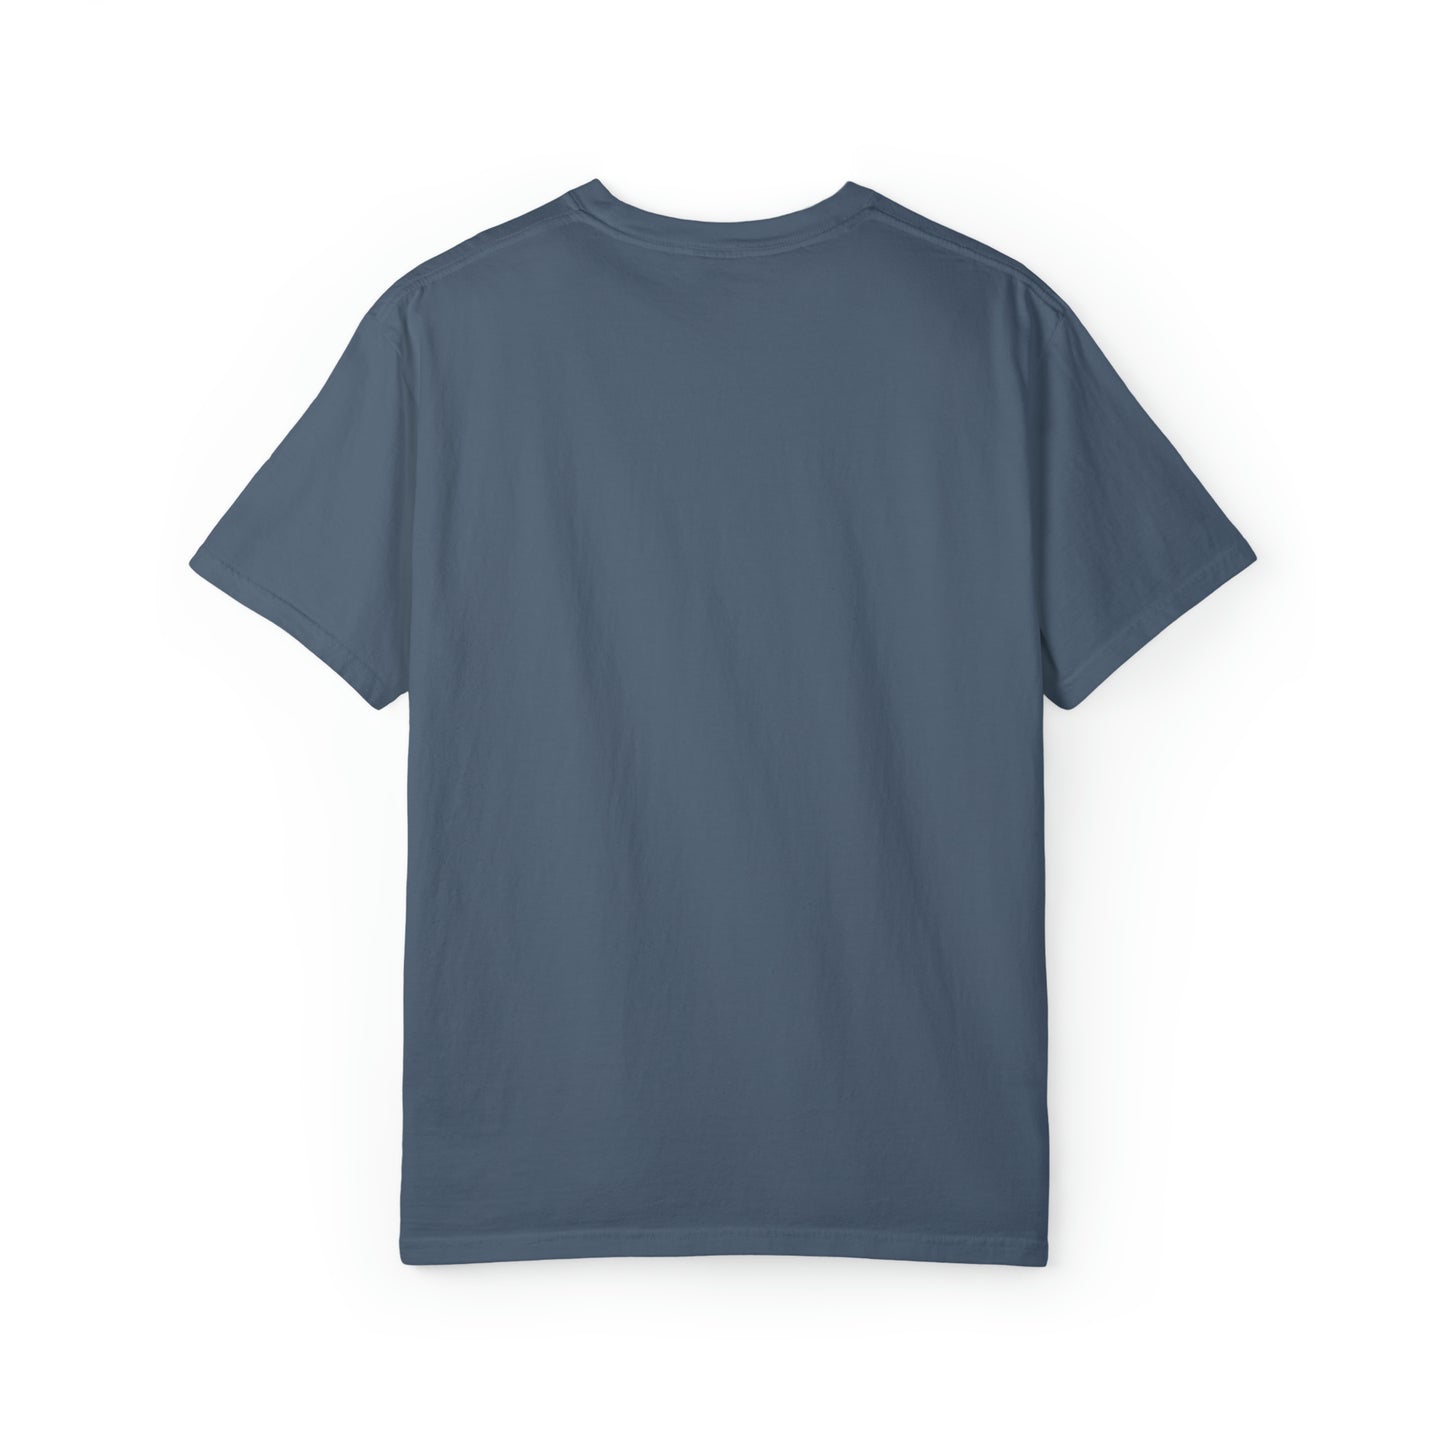 Kendrick Lamar - DNA - Unisex Comfort Colors T-shirt